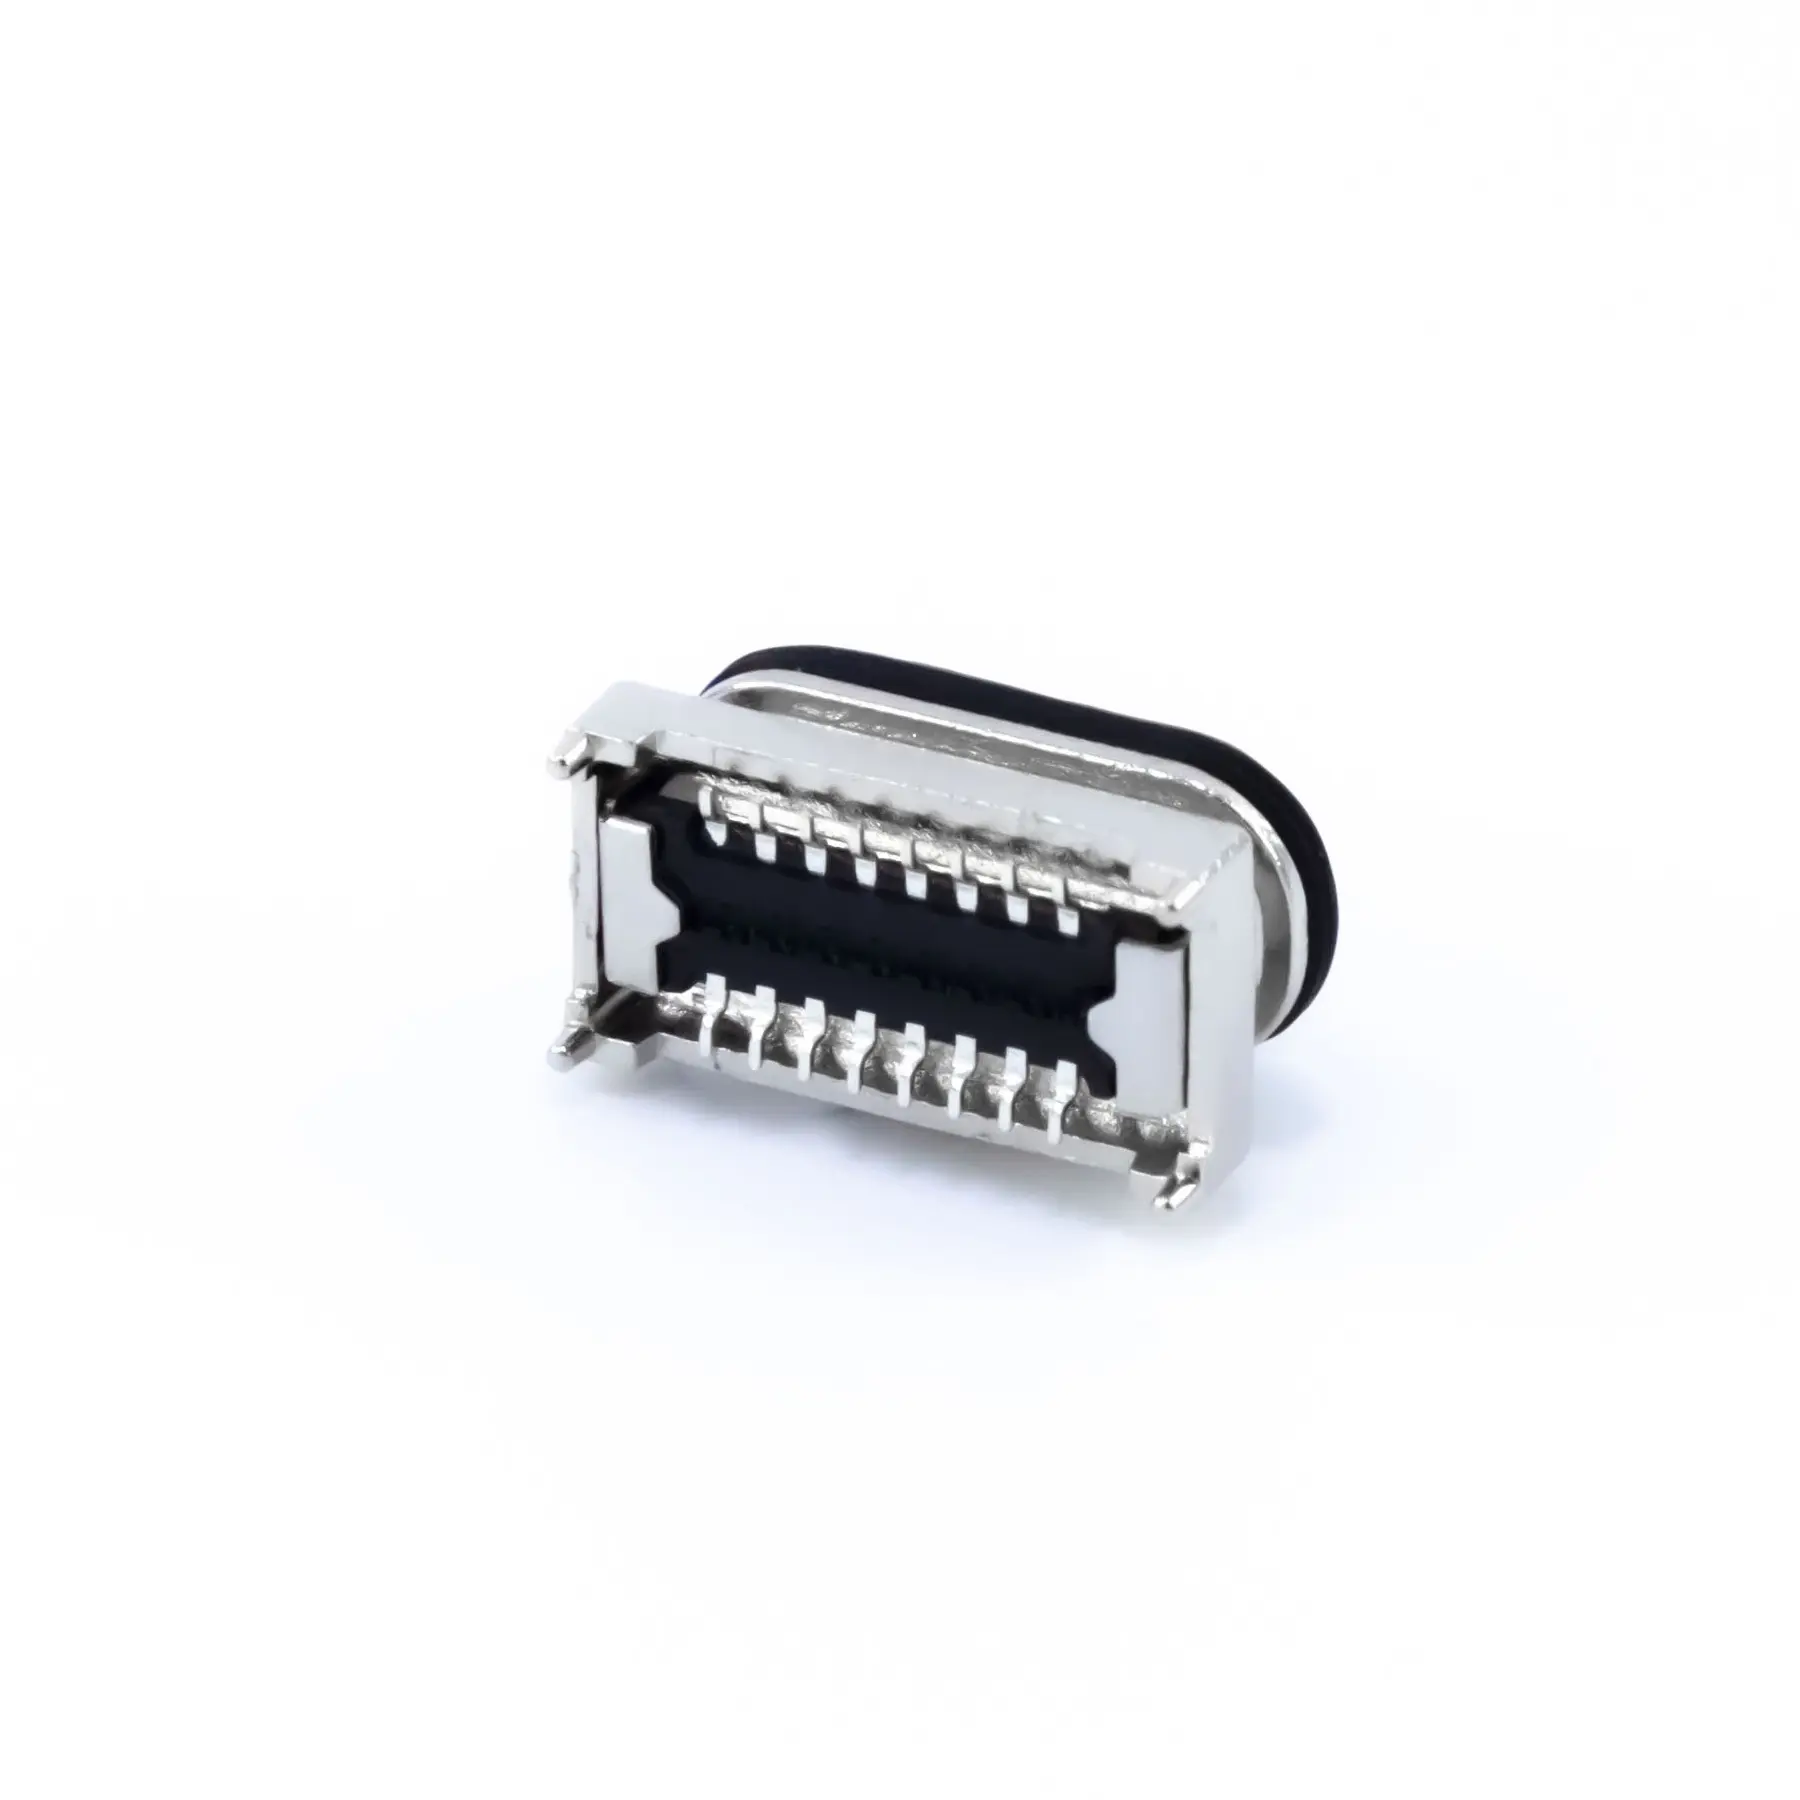 공장 판매 높이 pcb 5.2mm 24 핀 SMT 유형 c USB 3.1 커넥터 여성 IPX8 방수 착용 전자 장치